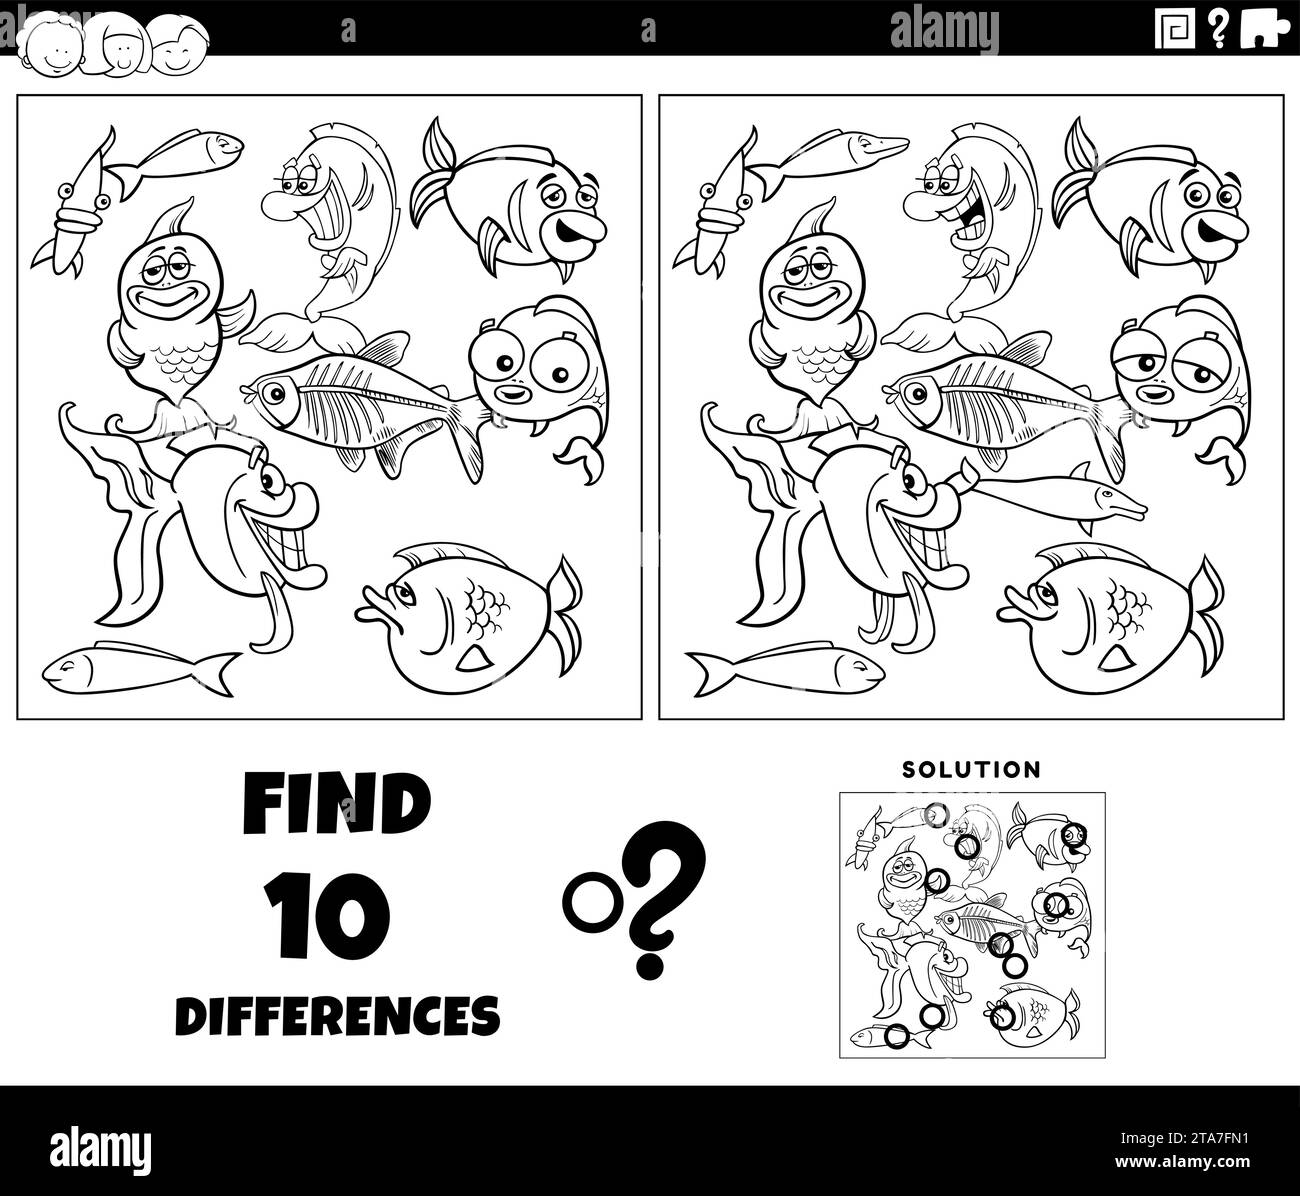 illustration de dessin animé de trouver les différences entre les images de l'activité éducative avec des personnages d'animaux de poisson page de coloriage de groupe Illustration de Vecteur